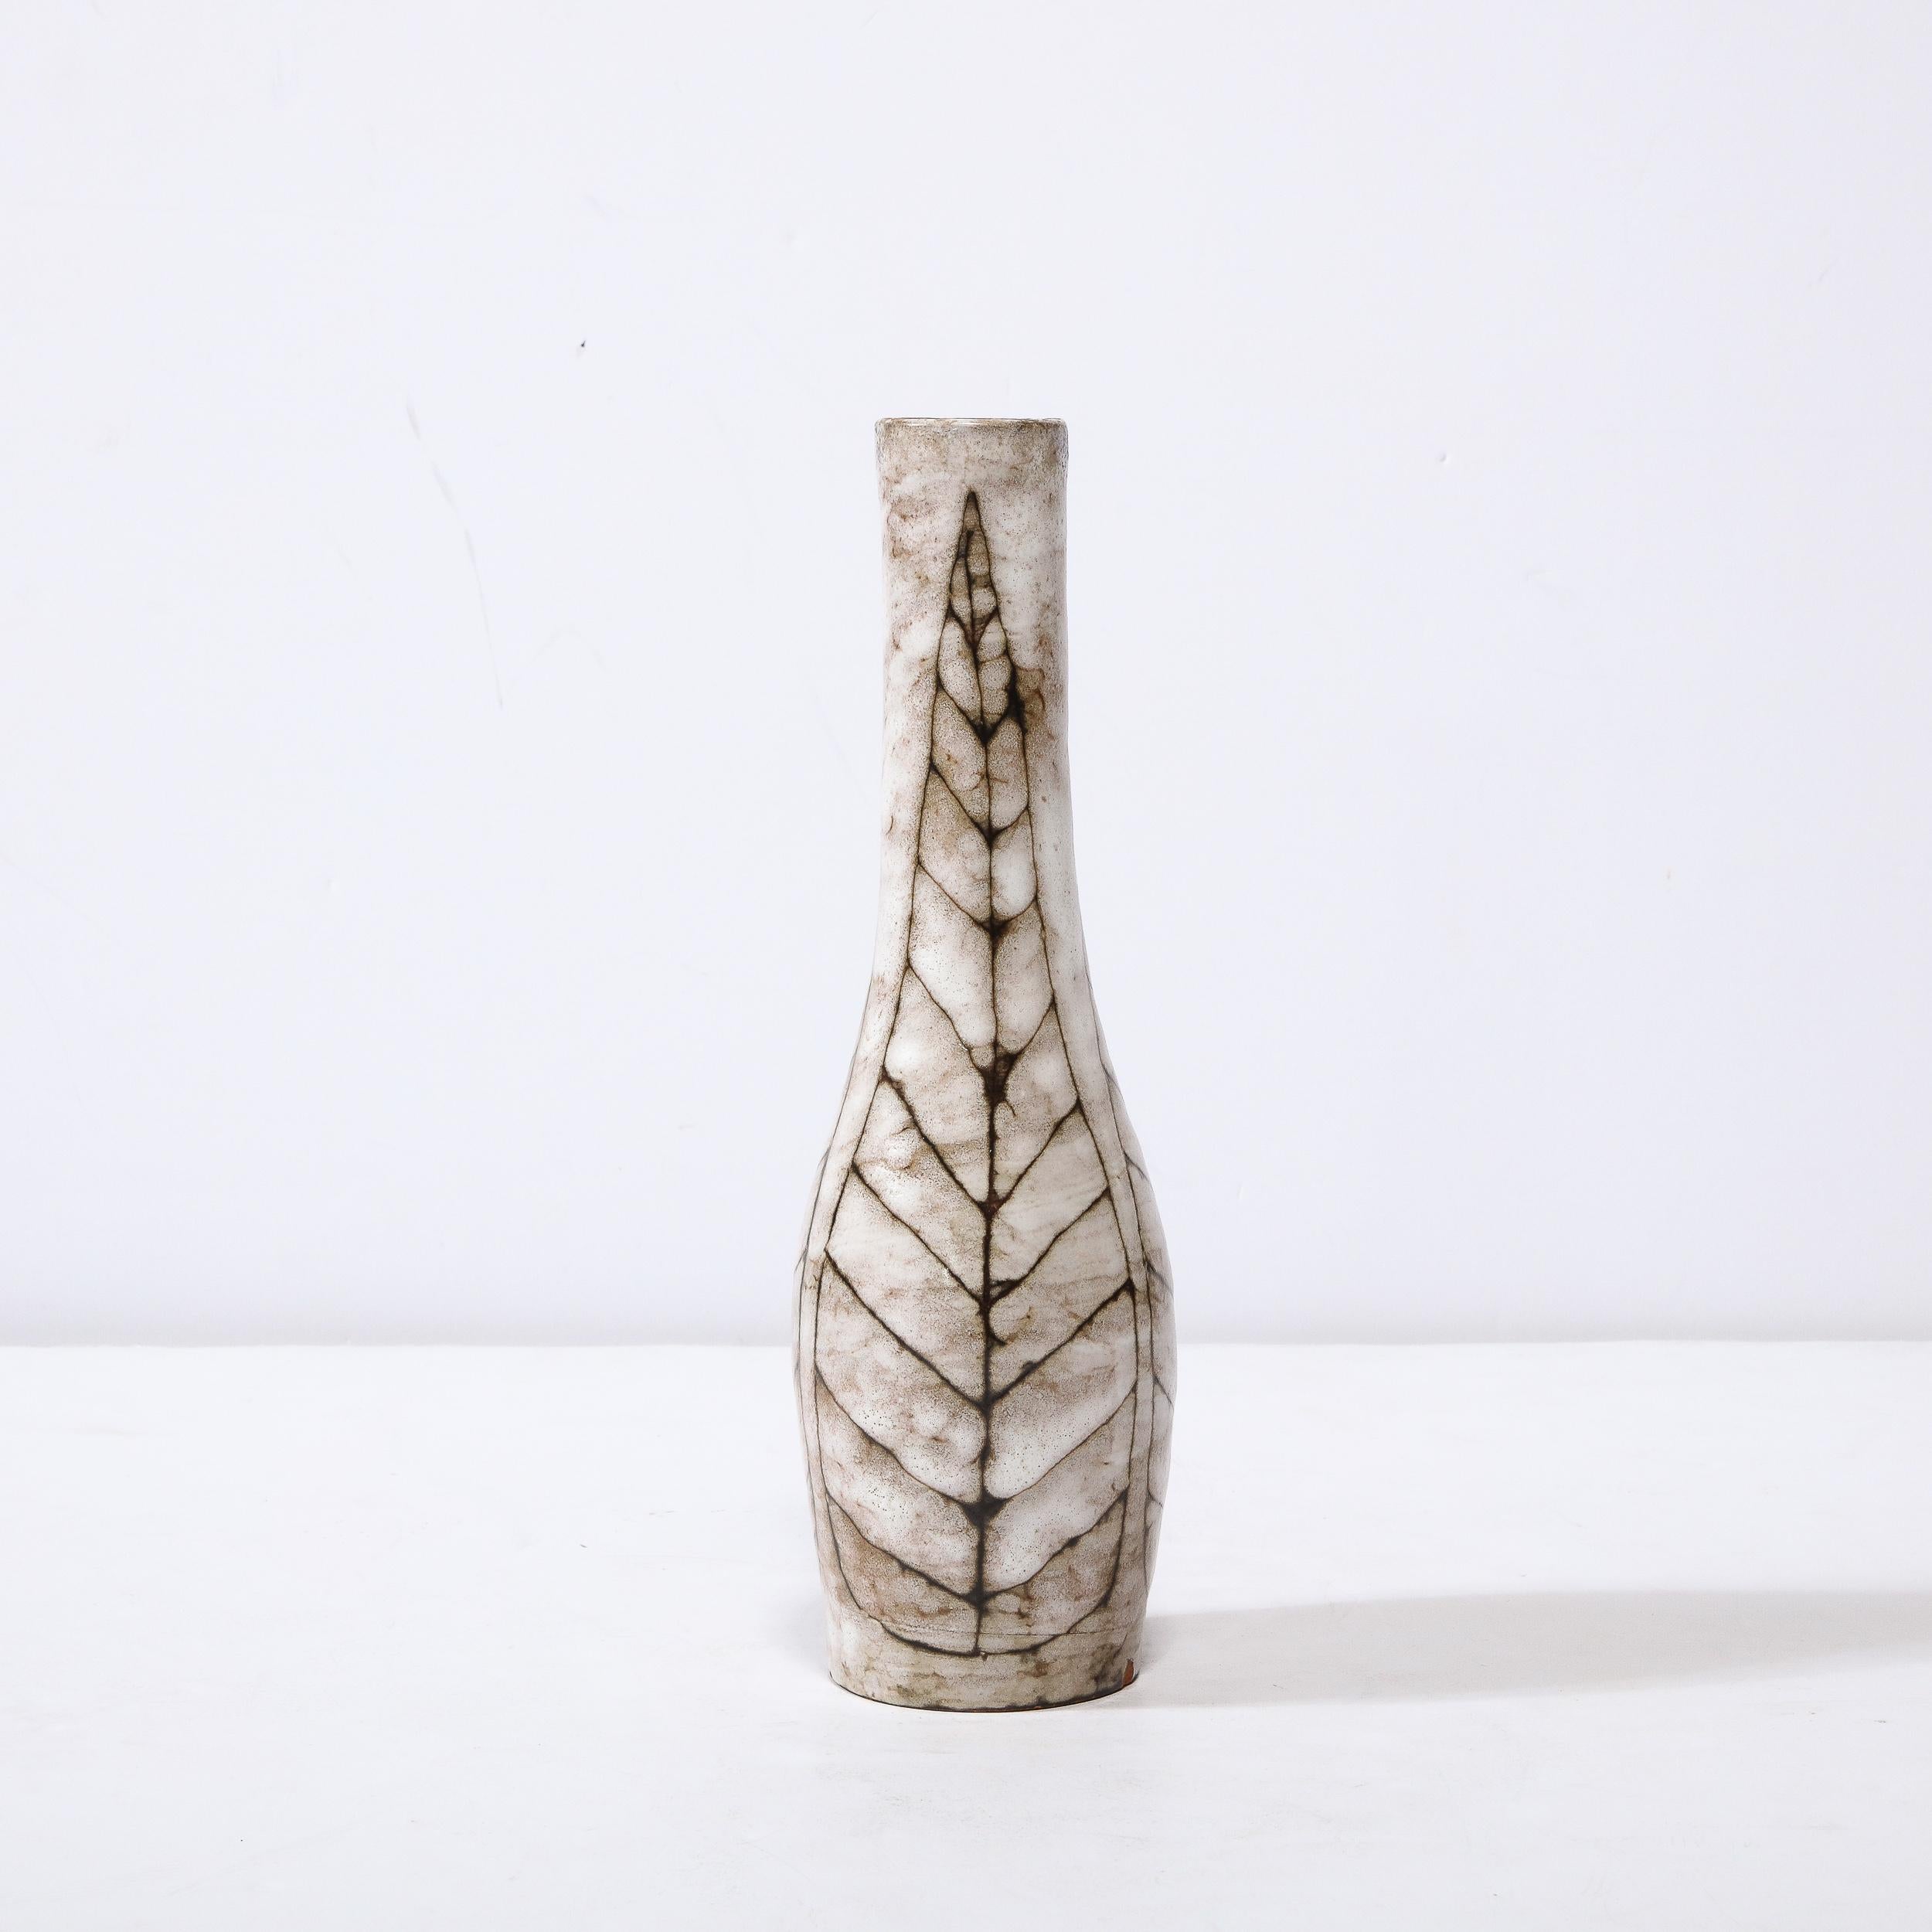 Diese Mid-Century Modernist Tapered Ceramic Vase mit Linear Leaf Motif ist ein schönes Beispiel der Nachkriegszeit europäischen Keramik, realisiert in Hódmezővasarhely Majolikagyár, Ungarn Circa 1960. Die Oberfläche jeder Vase hat eine